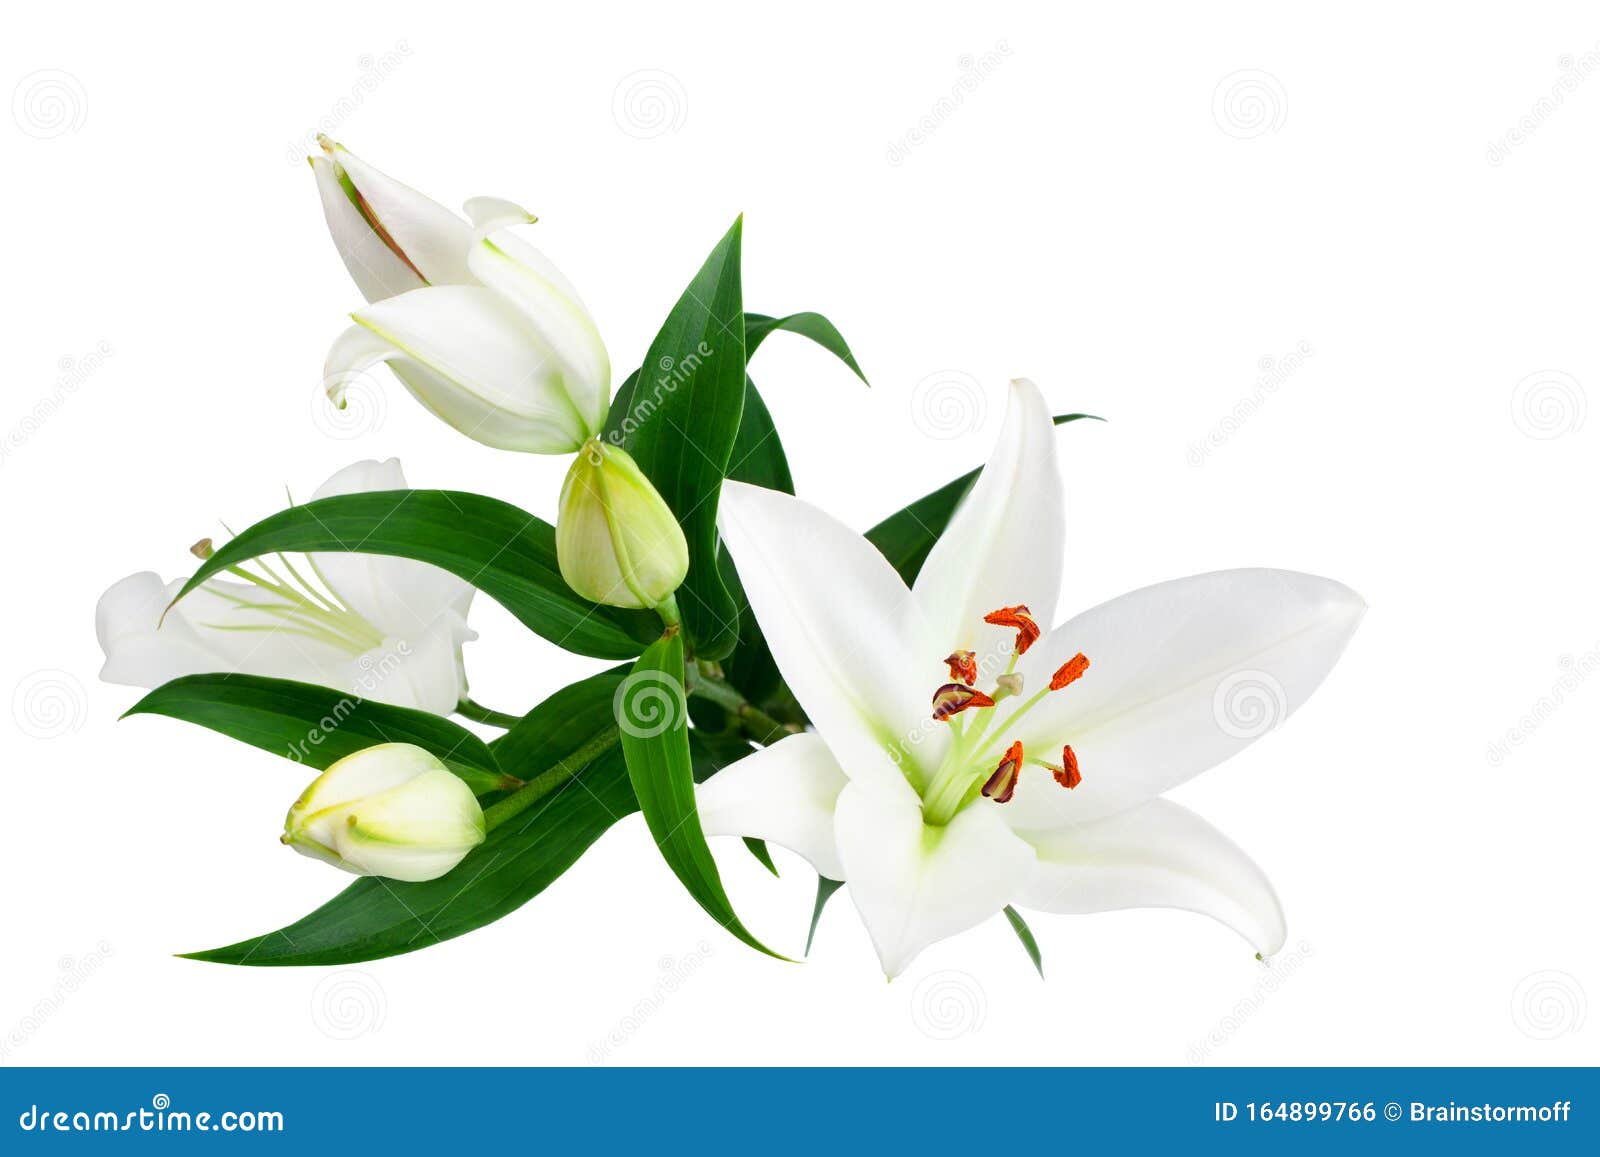 白色百合花和白色背景绿叶的花蕾 特写 百合花束 紫丁香花束 花图案库存照片 图片包括有花束 植物群